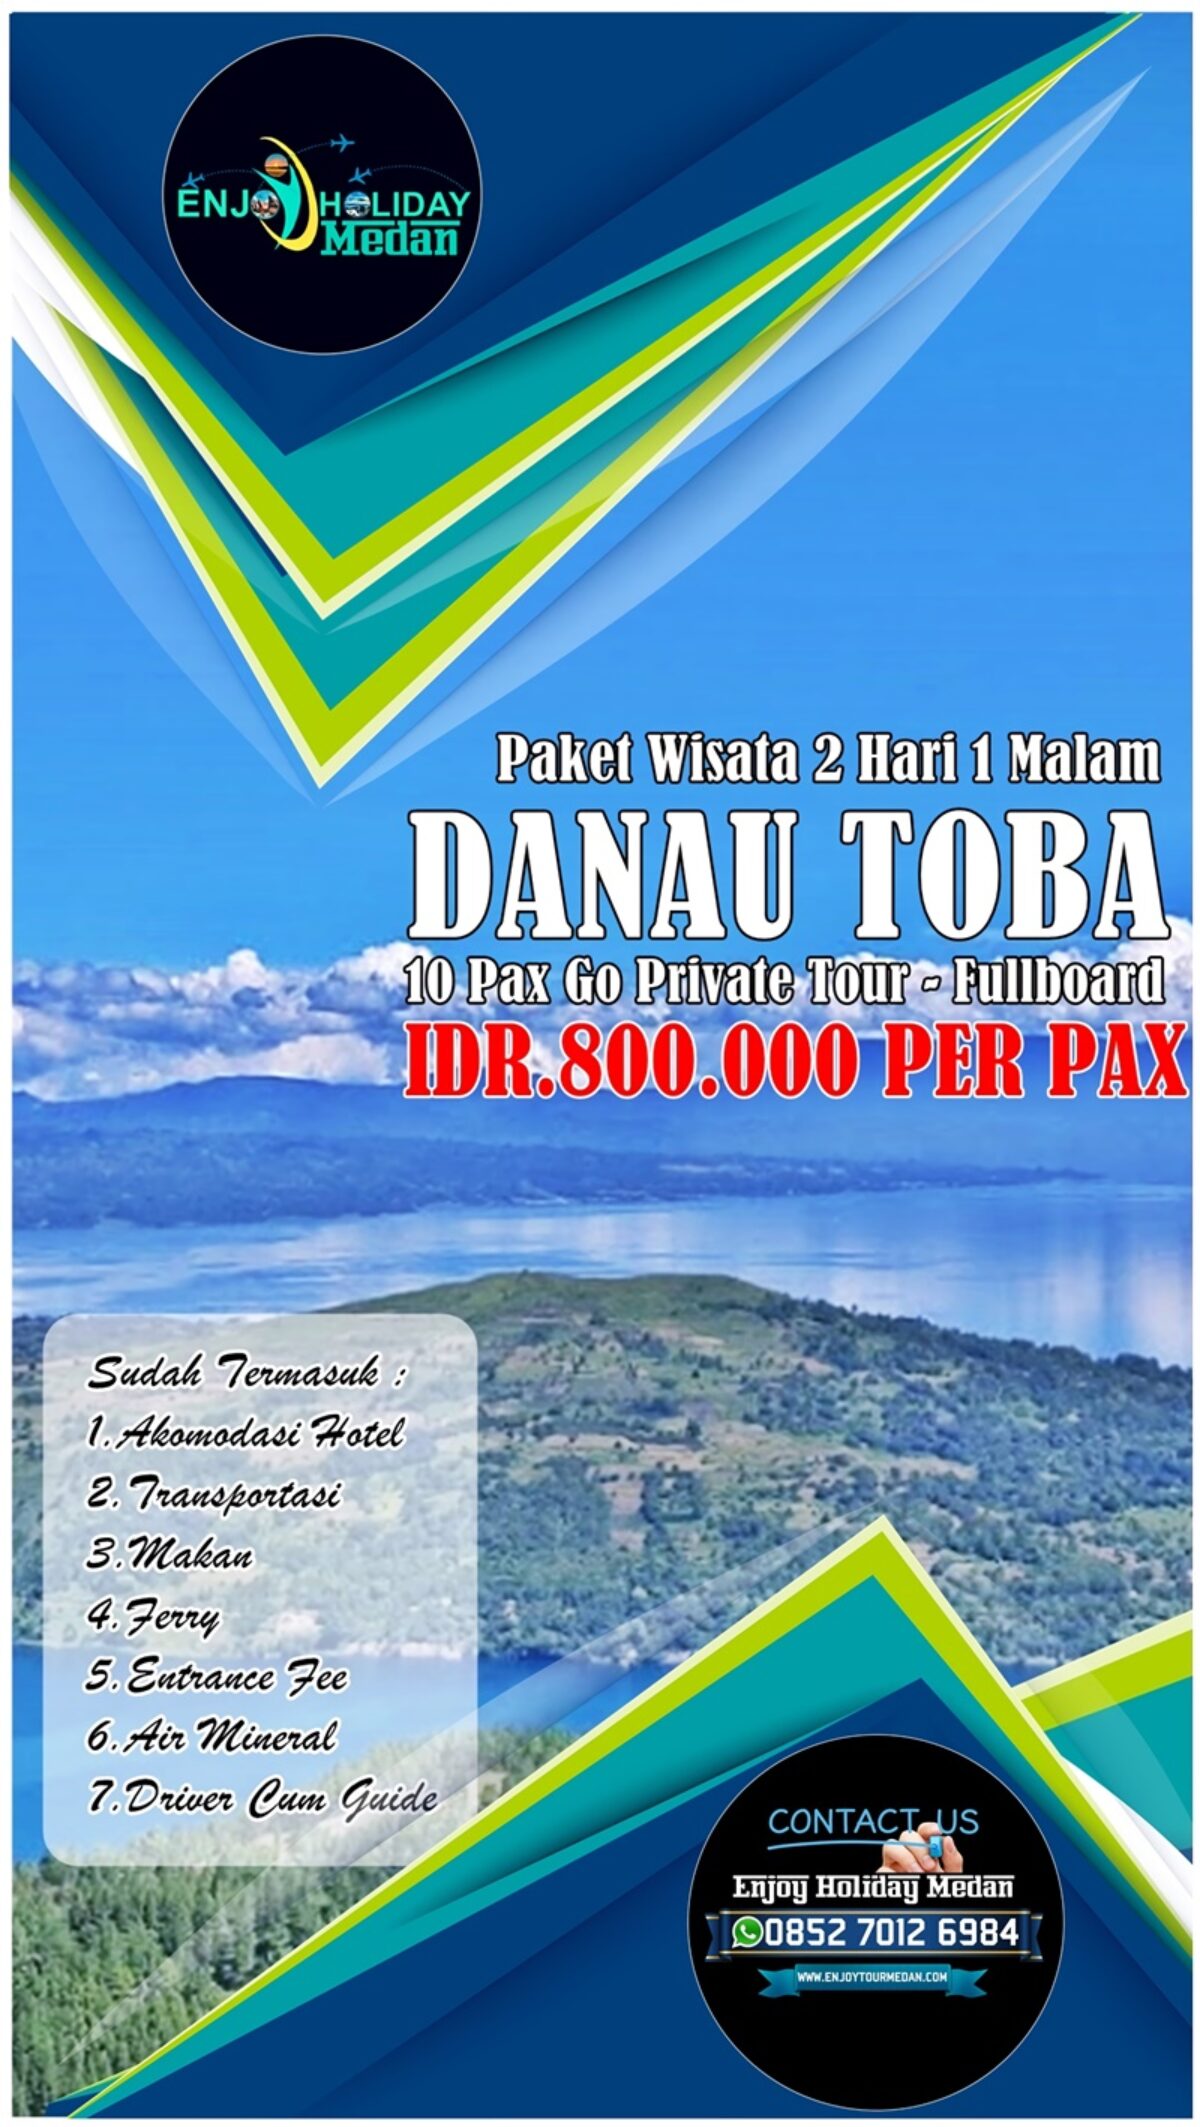 Paket Wisata Medan Danau Toba - Paket Wisata Danau Toba